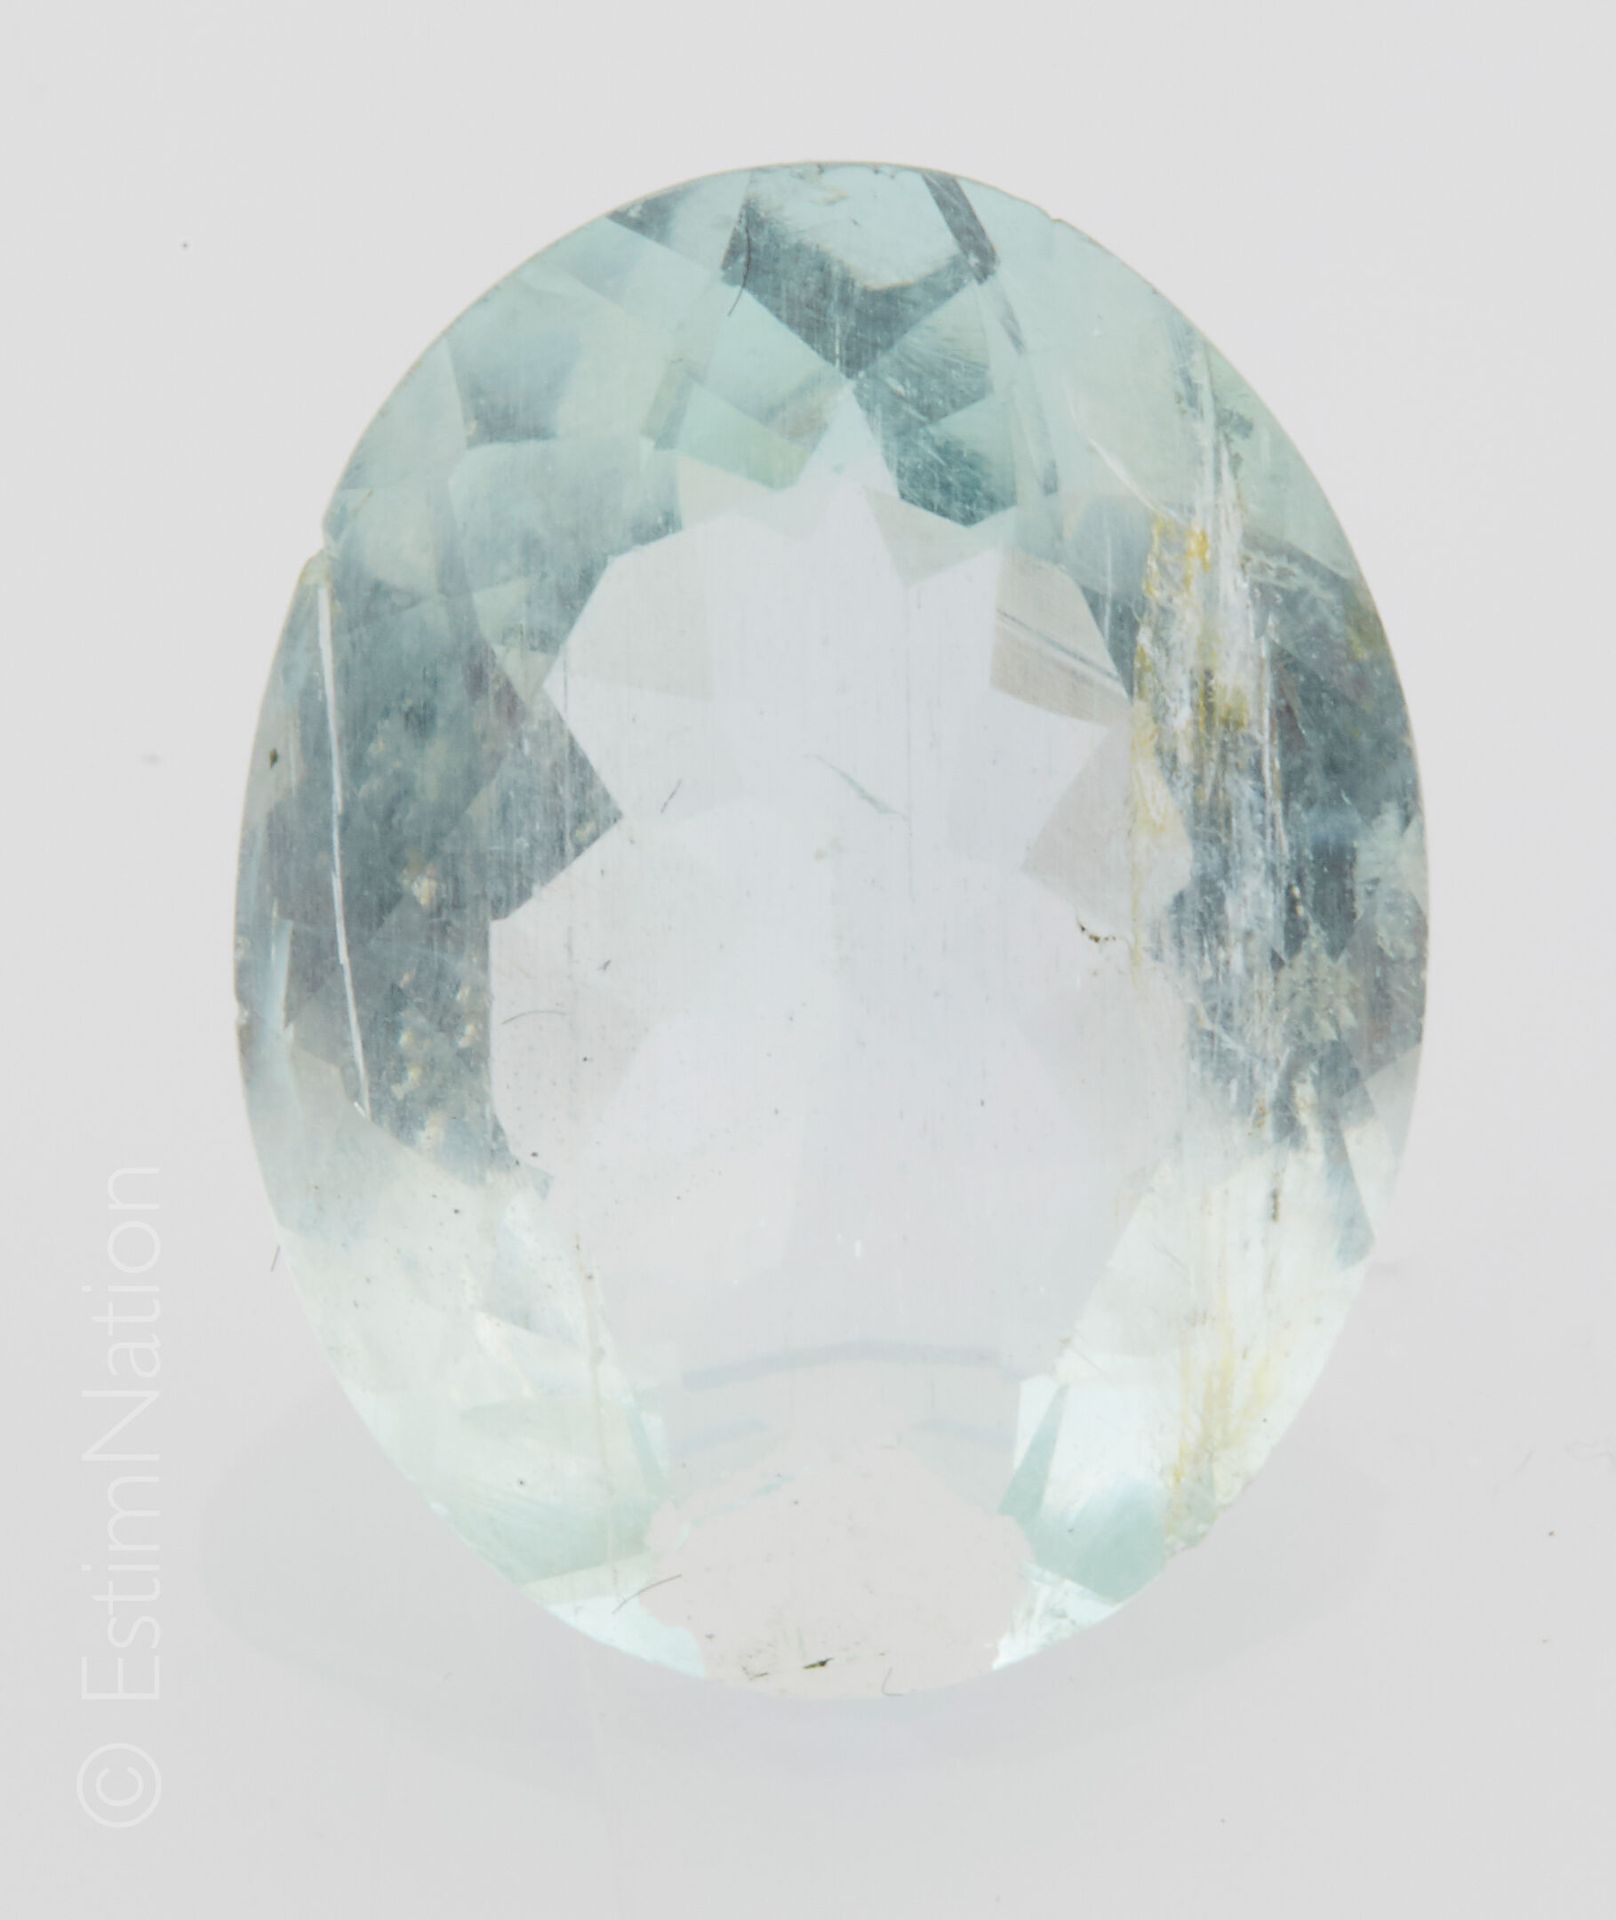 AIGUE - MARINE SUR PAPIER 一颗椭圆刻面的海蓝宝石，纸质。尺寸：约17.7 x 13.6 x 7.2毫米。海蓝宝石的重量：约9克拉。